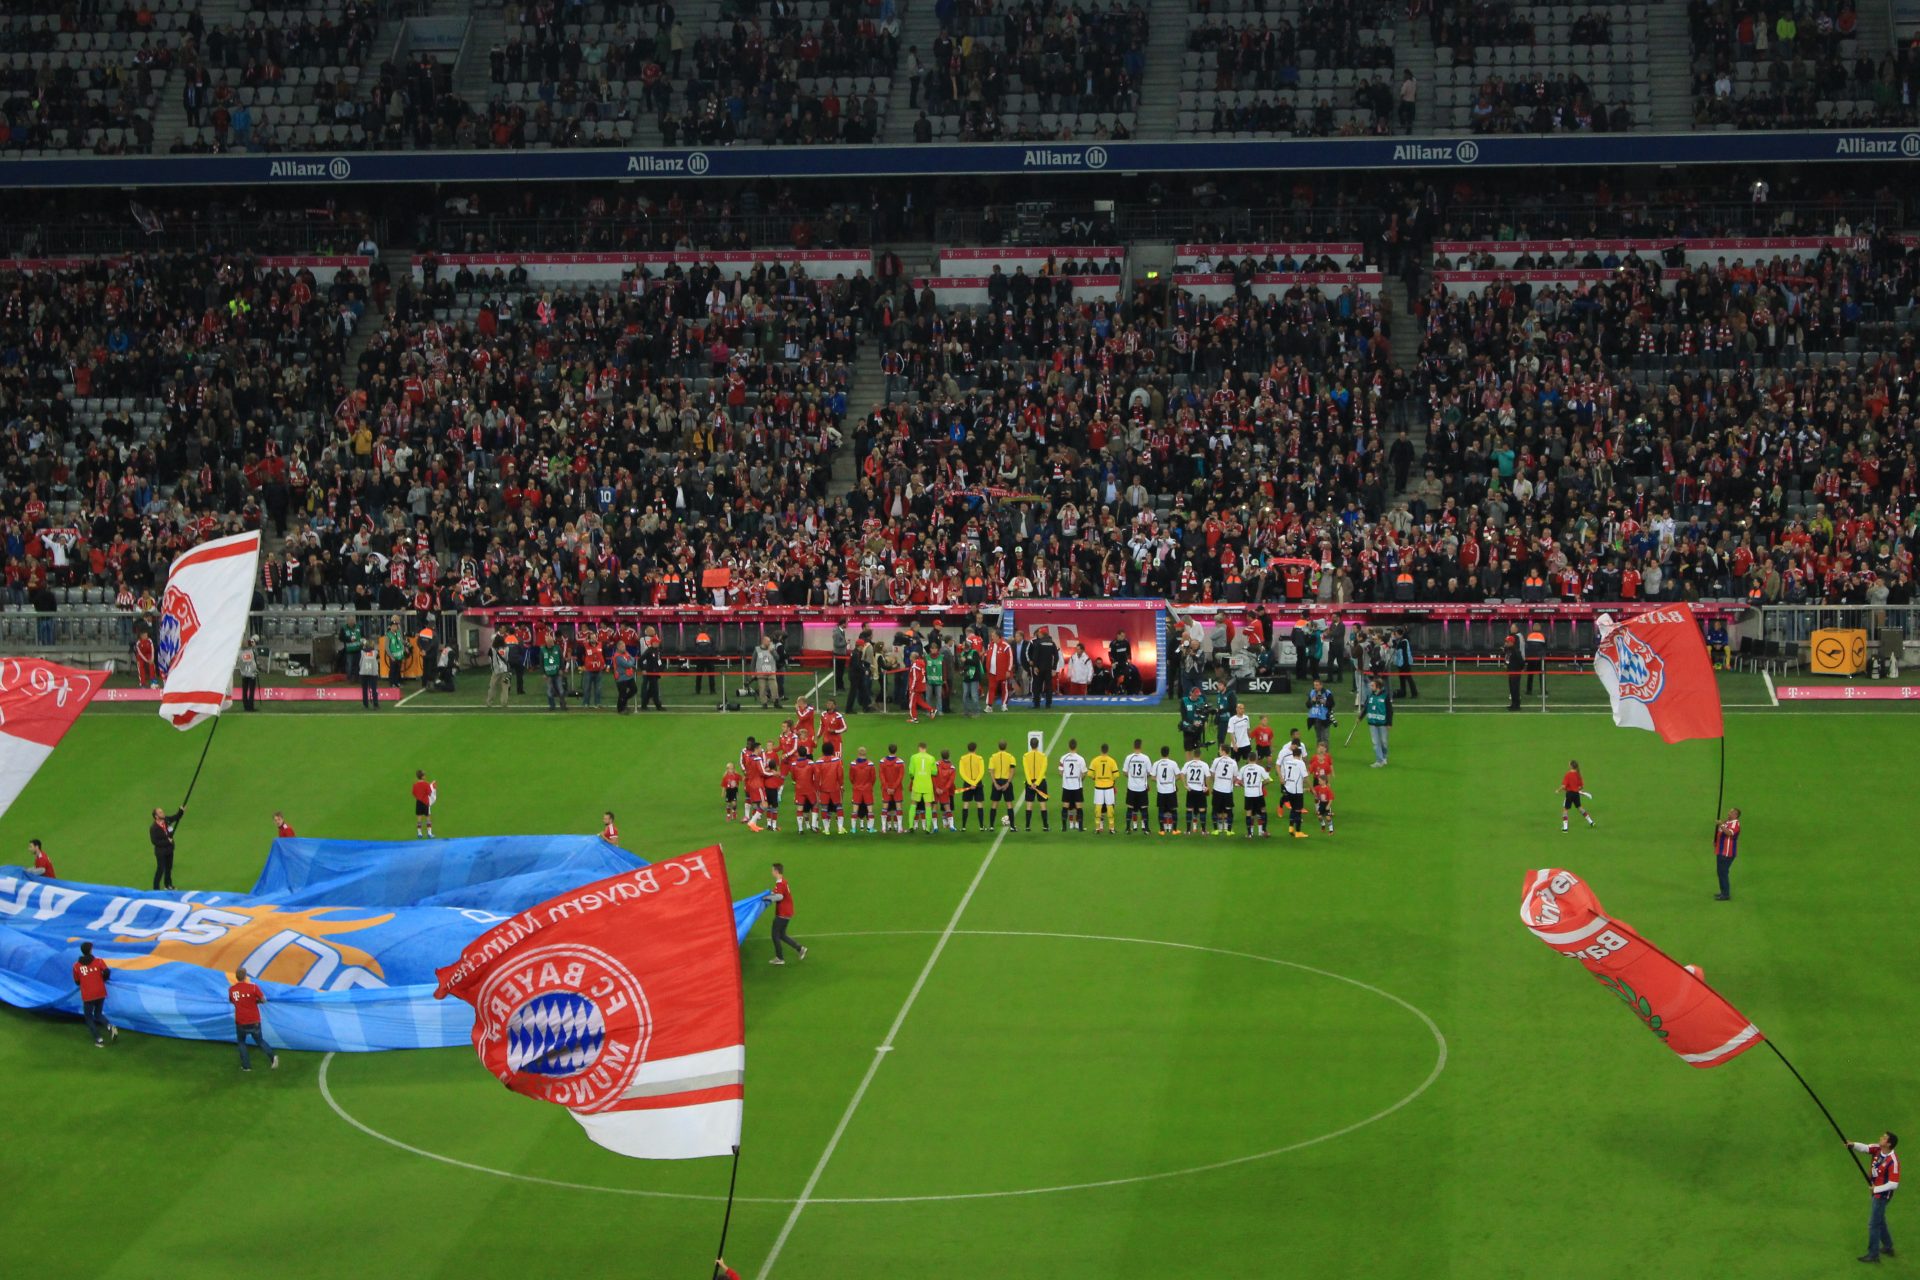 bayern munchen match - Attending a Bayern Munich Match at Allianz Arena - Tickets, Info, & More